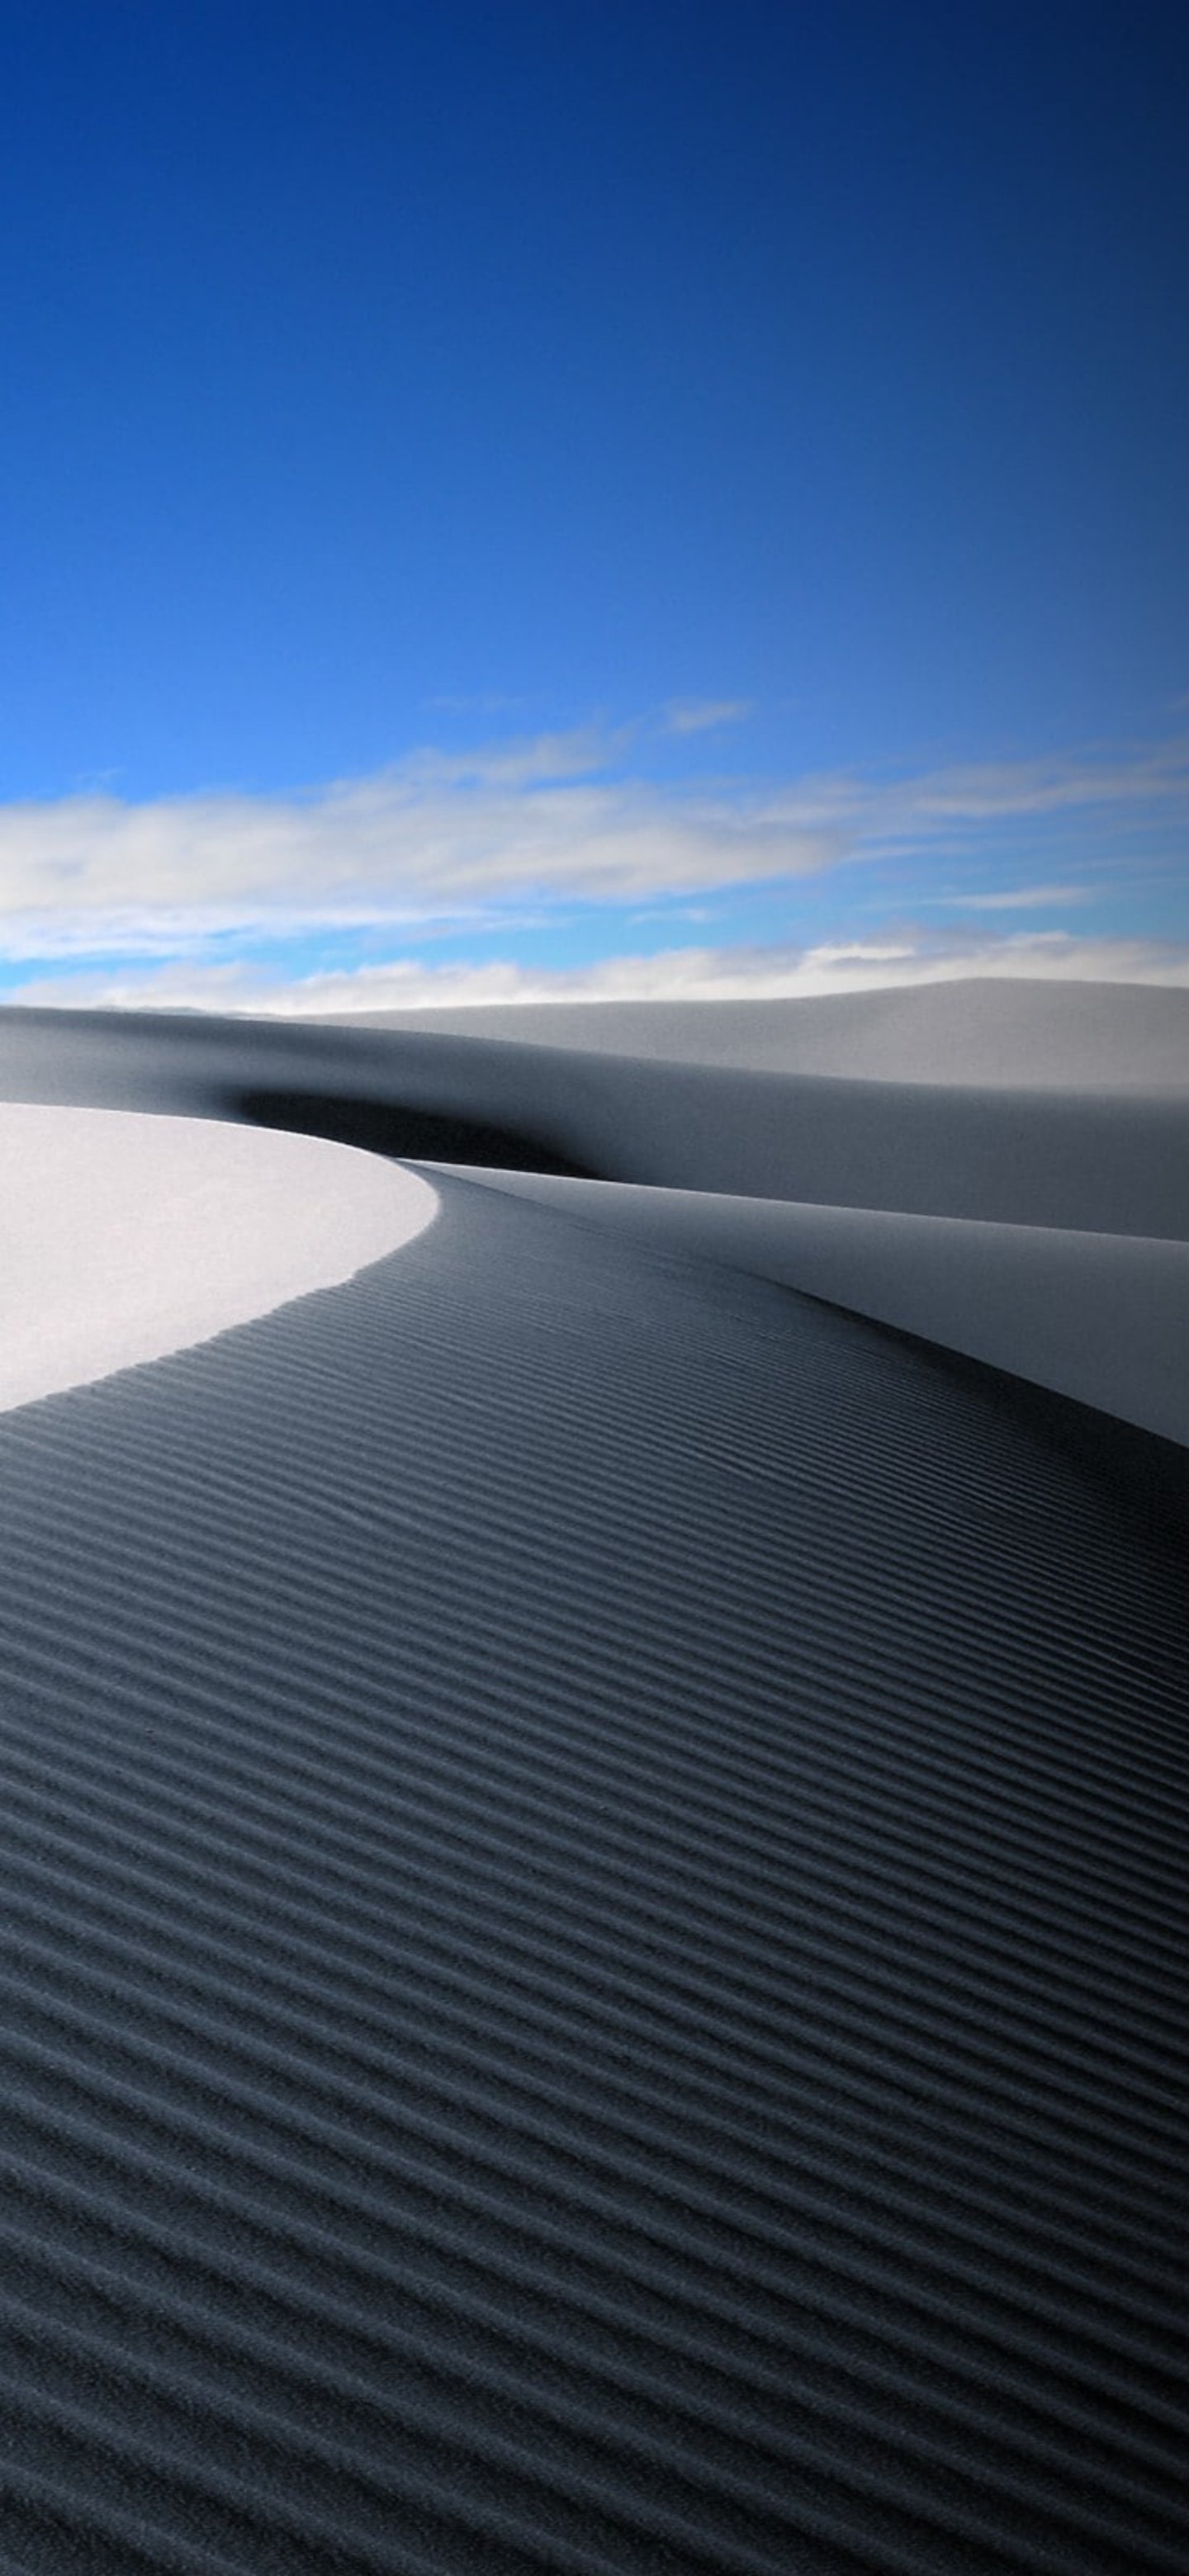 Fondos de pantalla de dunas con arena blanca